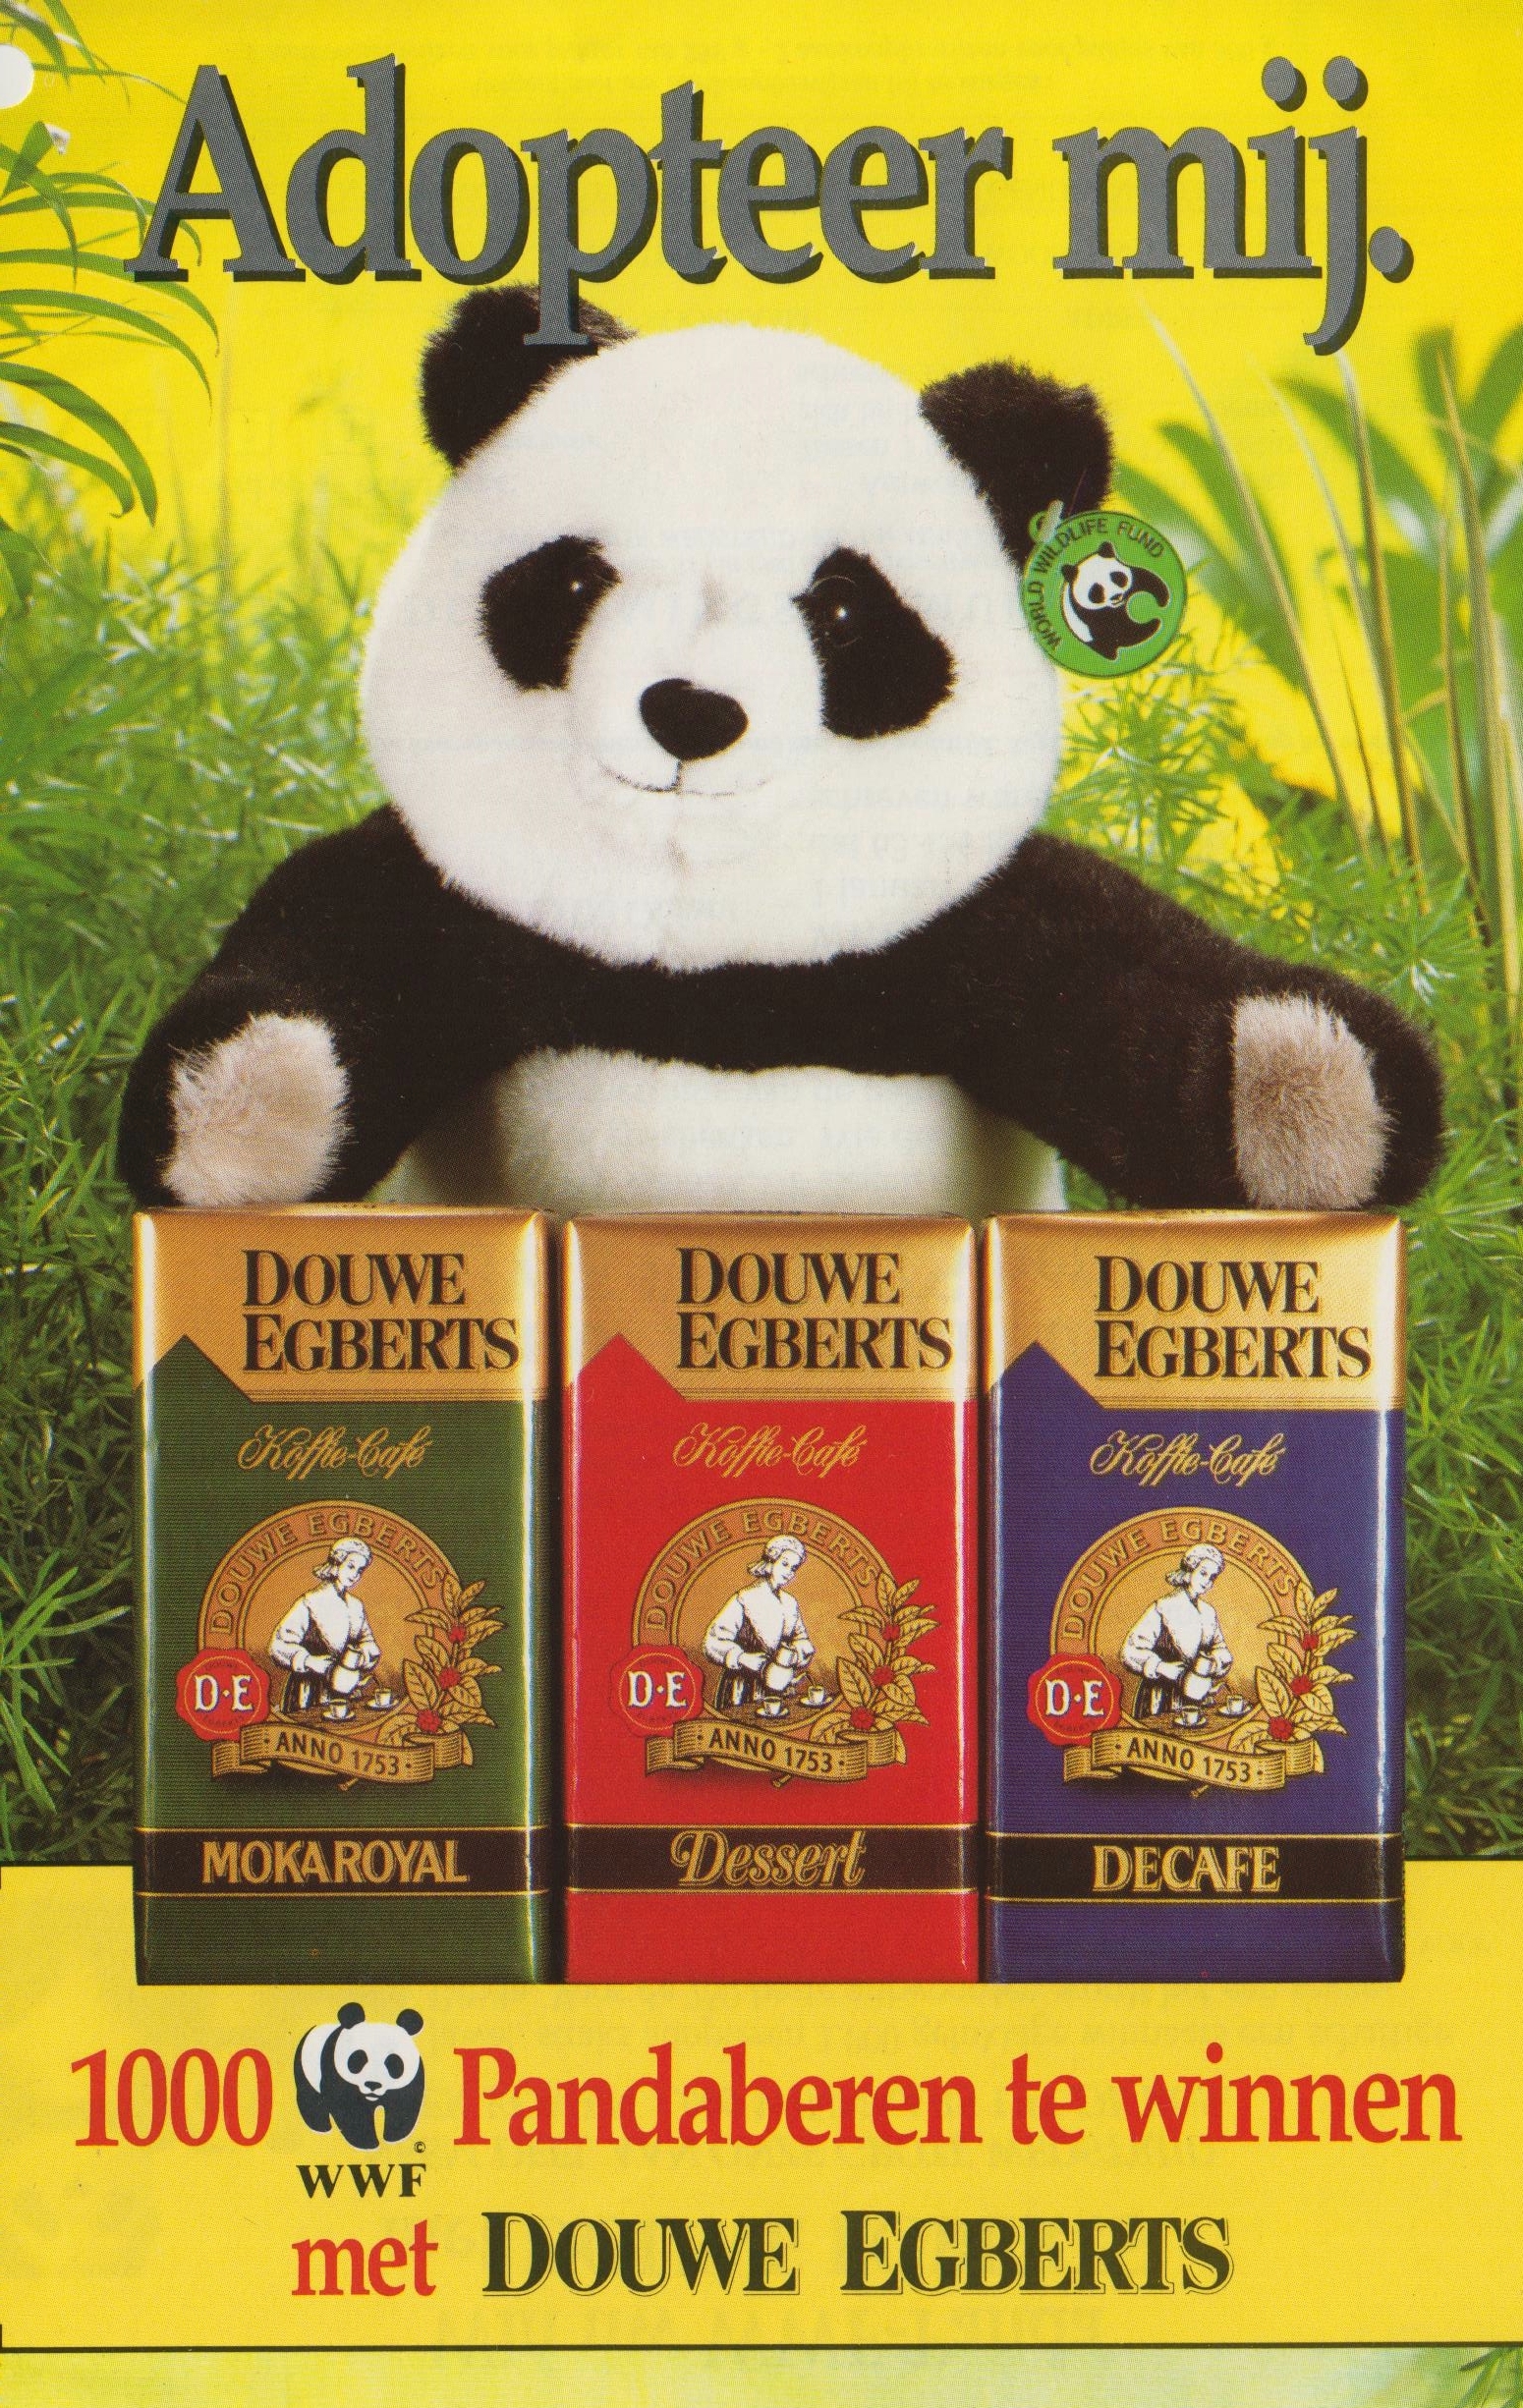 Promo van Douwe Egberts uit 1990. De drie soorten – Dessert, Moka Royal en Decafé – staan centraal. Collectie Jacobs Douwe Egberts, Brussel.